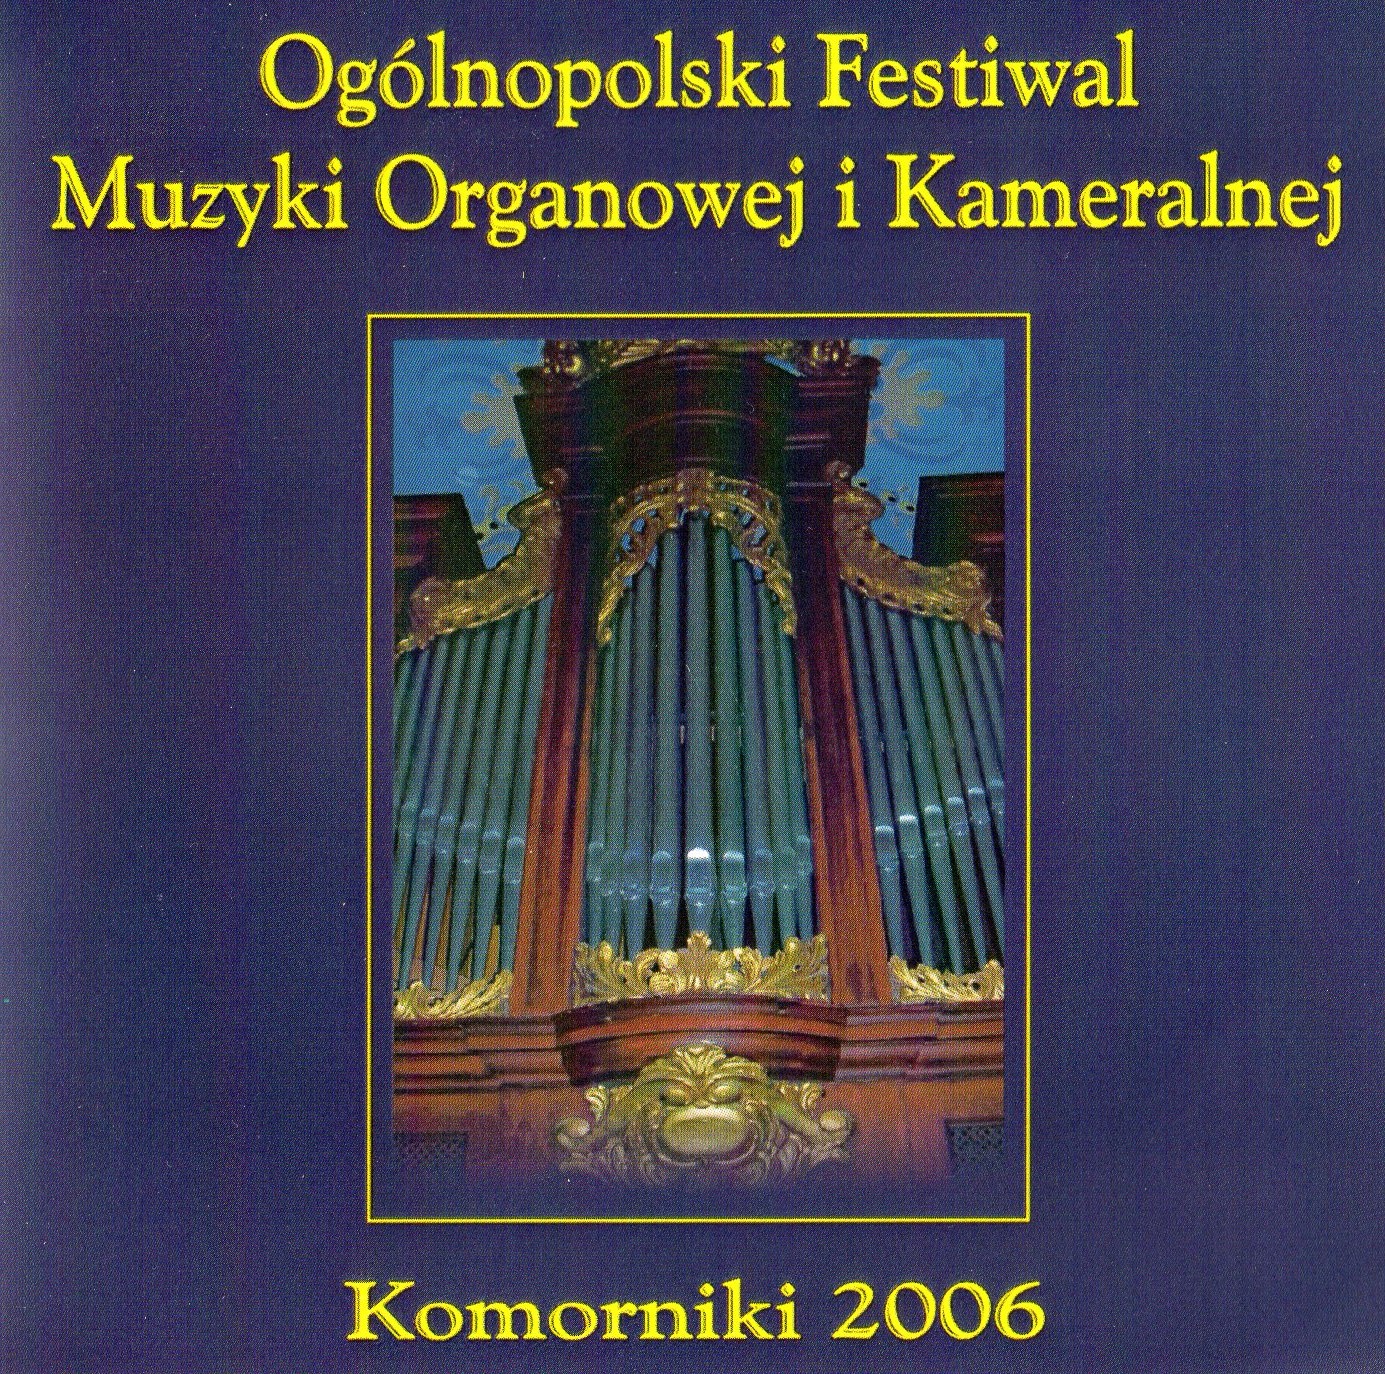 I Ogólnopolski Festiwal Muzyki Organowej i Kameralnej Komorniki 2006